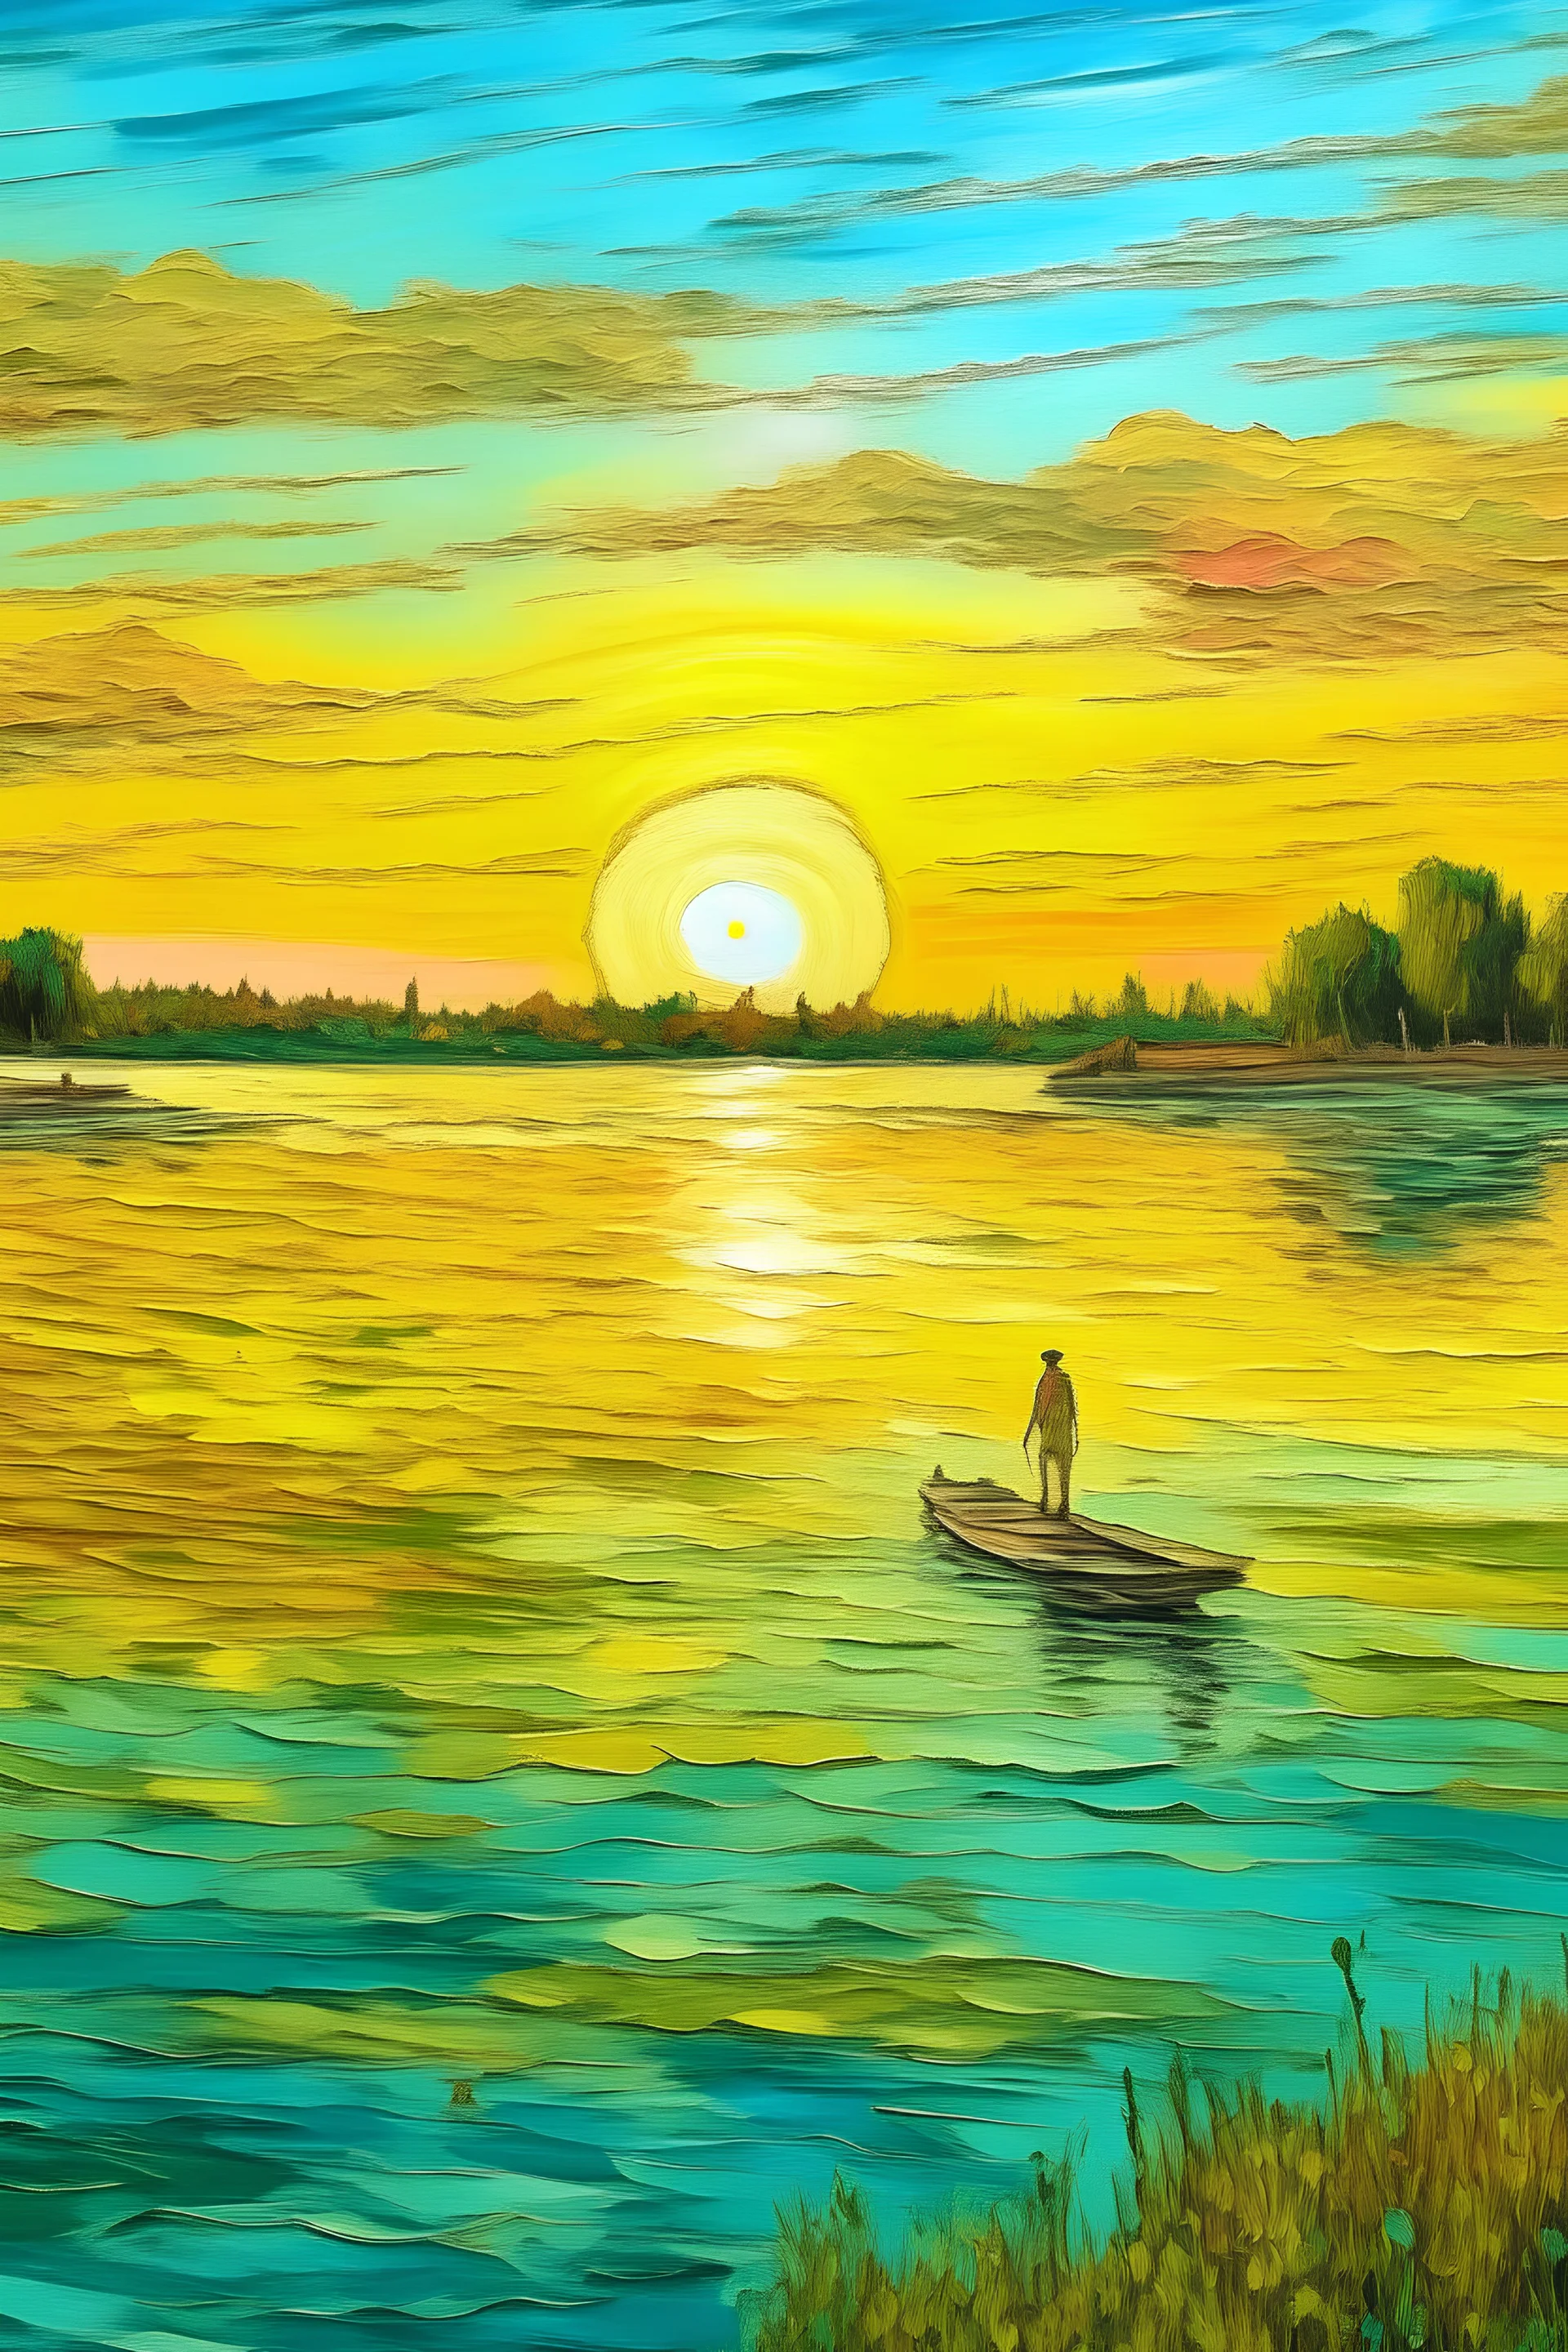 paisaje de la laguna setubal, al atardecer, aguas tranquilas pintadas por técnicas del impresionismo con una persona haciendo Stand up con su tabla en el medio de la laguna pintado por Van Gogh